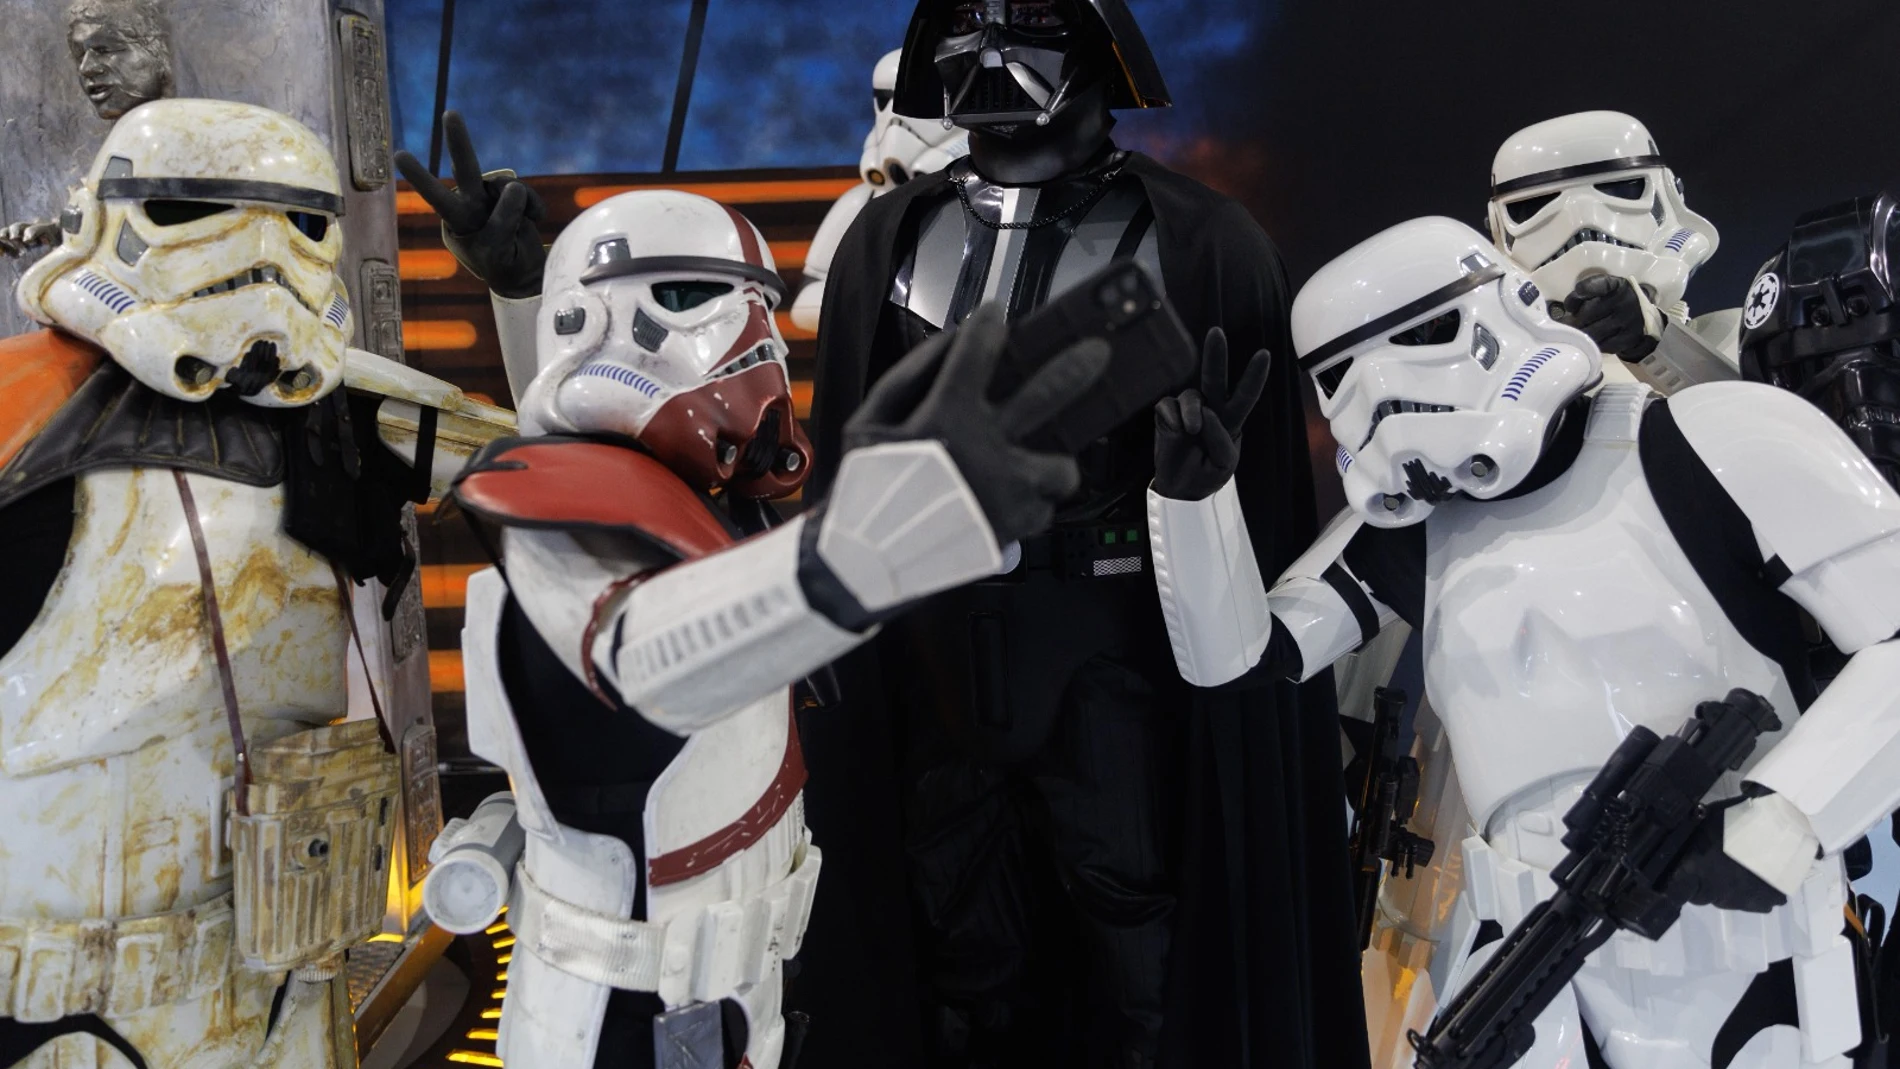 Las figuras a tamaño real de Darth Vader y los soldados de asalto de las fuerzas imperiales en la exposición 'Universo Star Wars' en el Centro de Arte Tomás y Valiente de Fuenlabrada